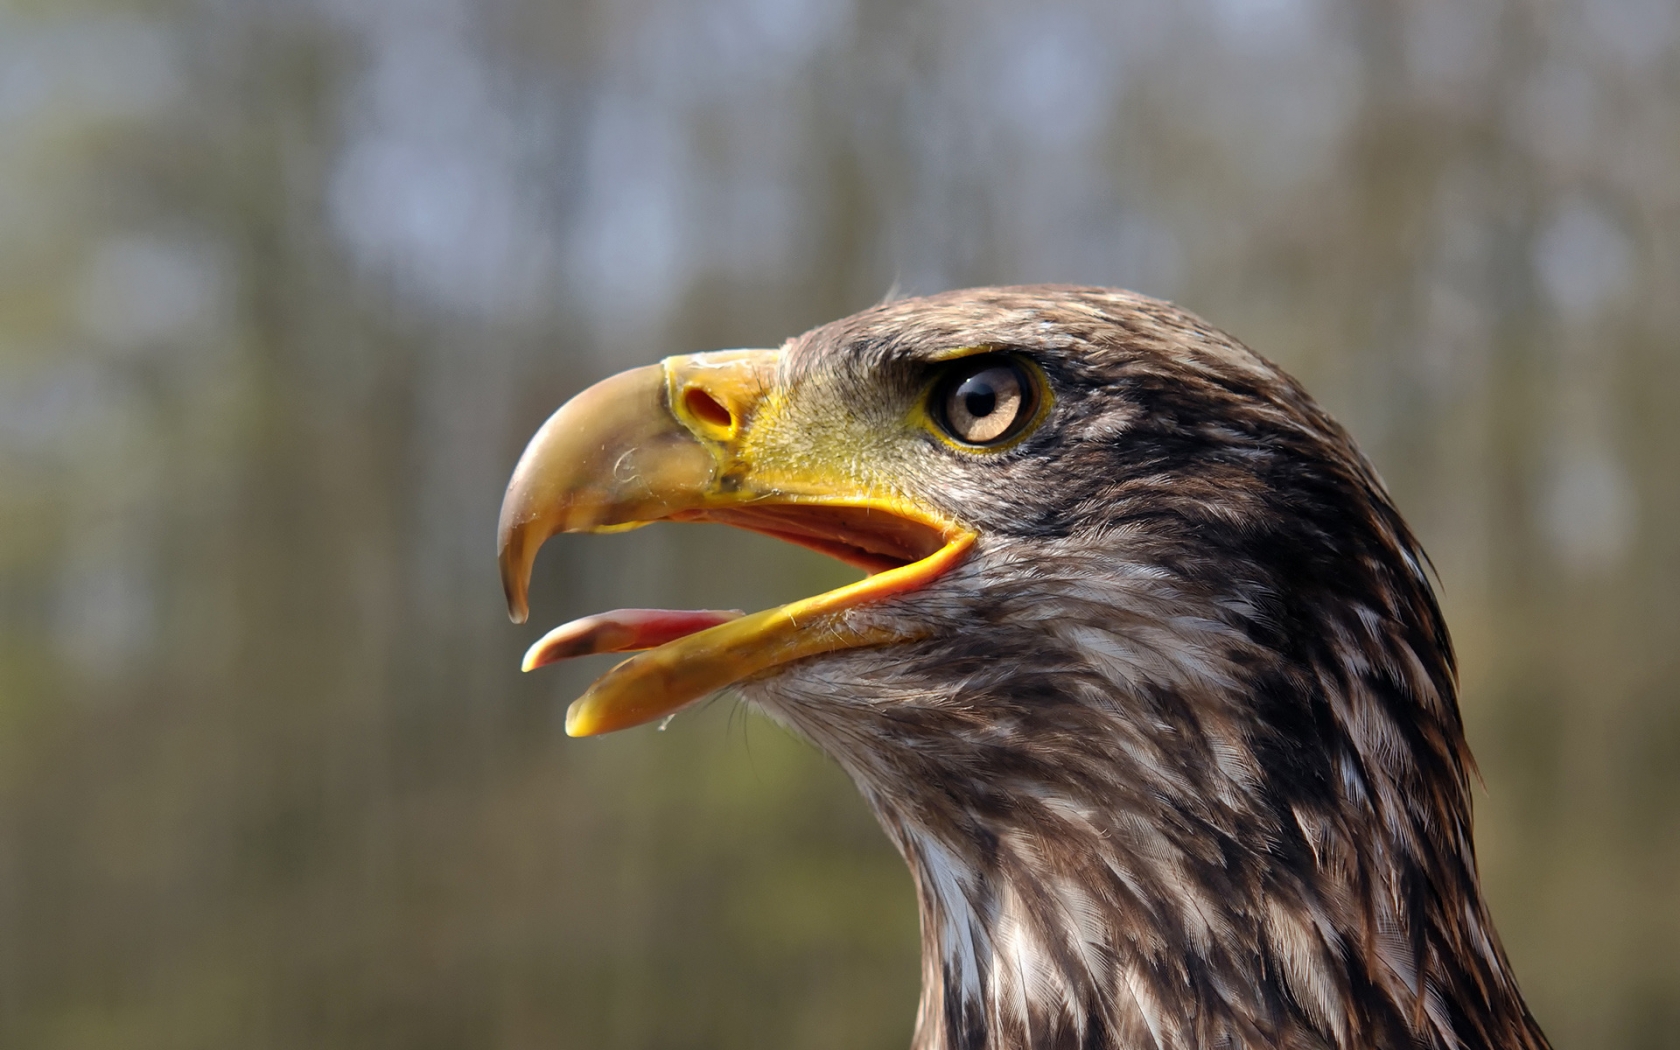 Juvenile Bald Eagle for 1680 x 1050 widescreen resolution